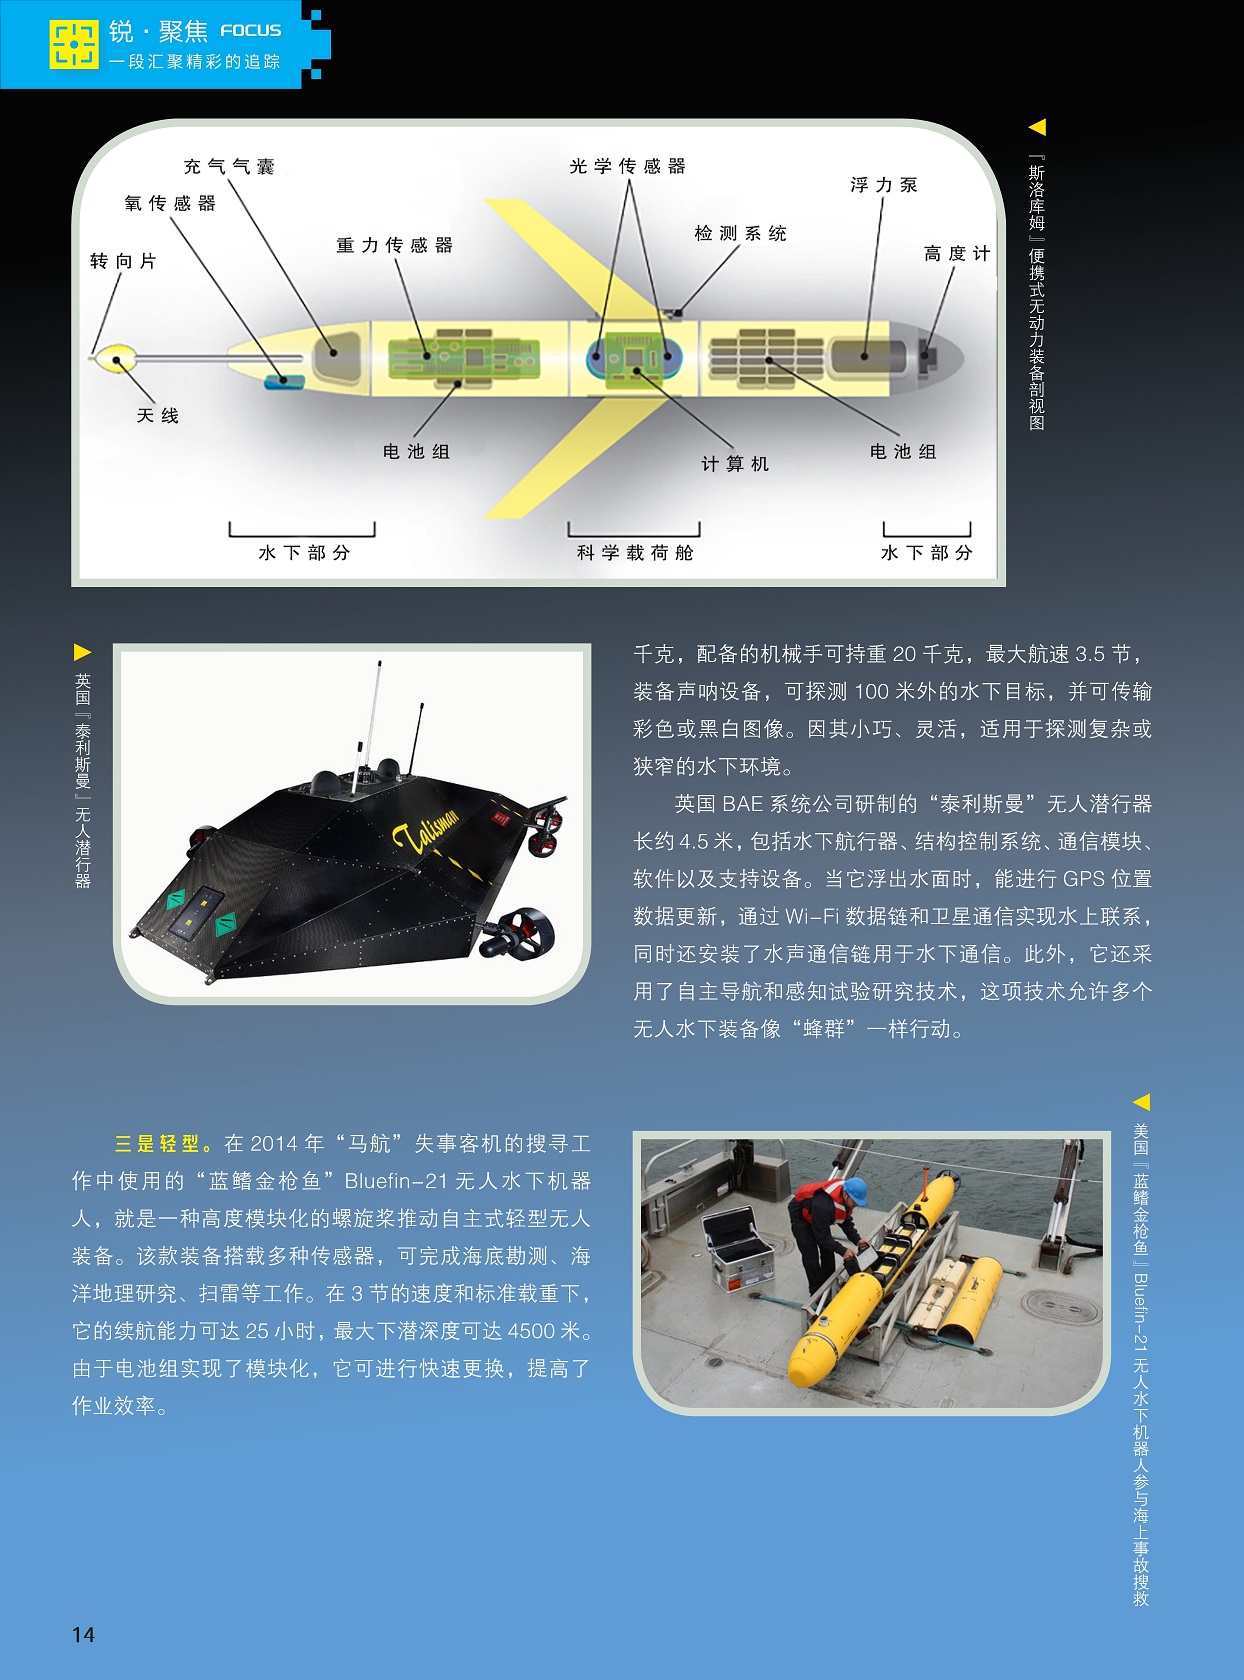 螺旋桨推动自主式轻型无人装备,自主导航和感知试验研究技术